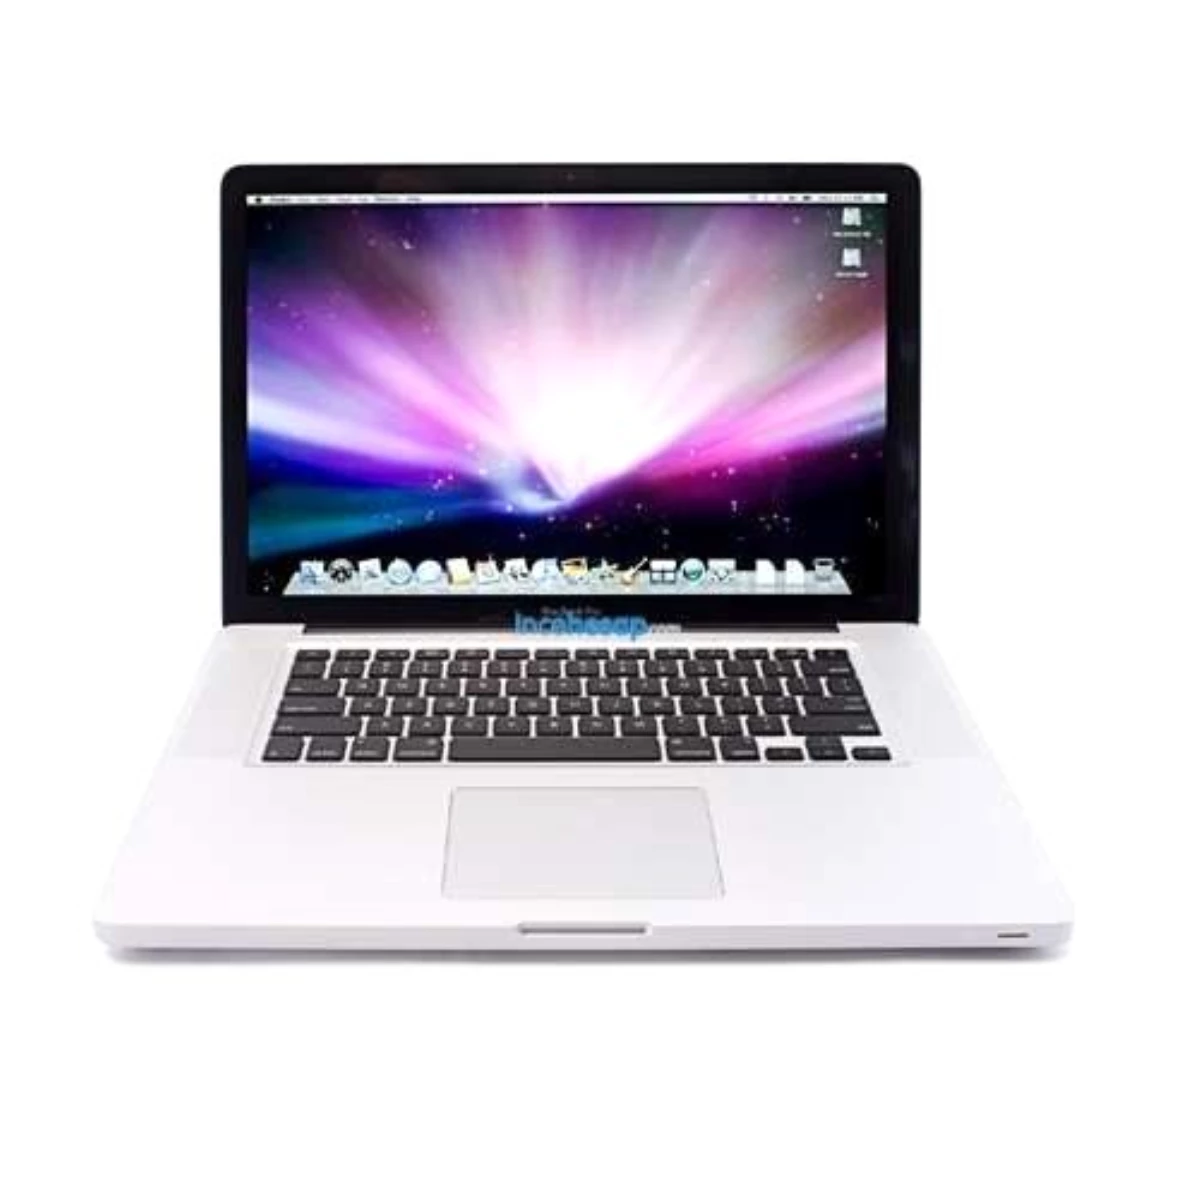 Apple Macbook Pro 15" İ7 2.3ghz 4gb 500gb Vga 512mb